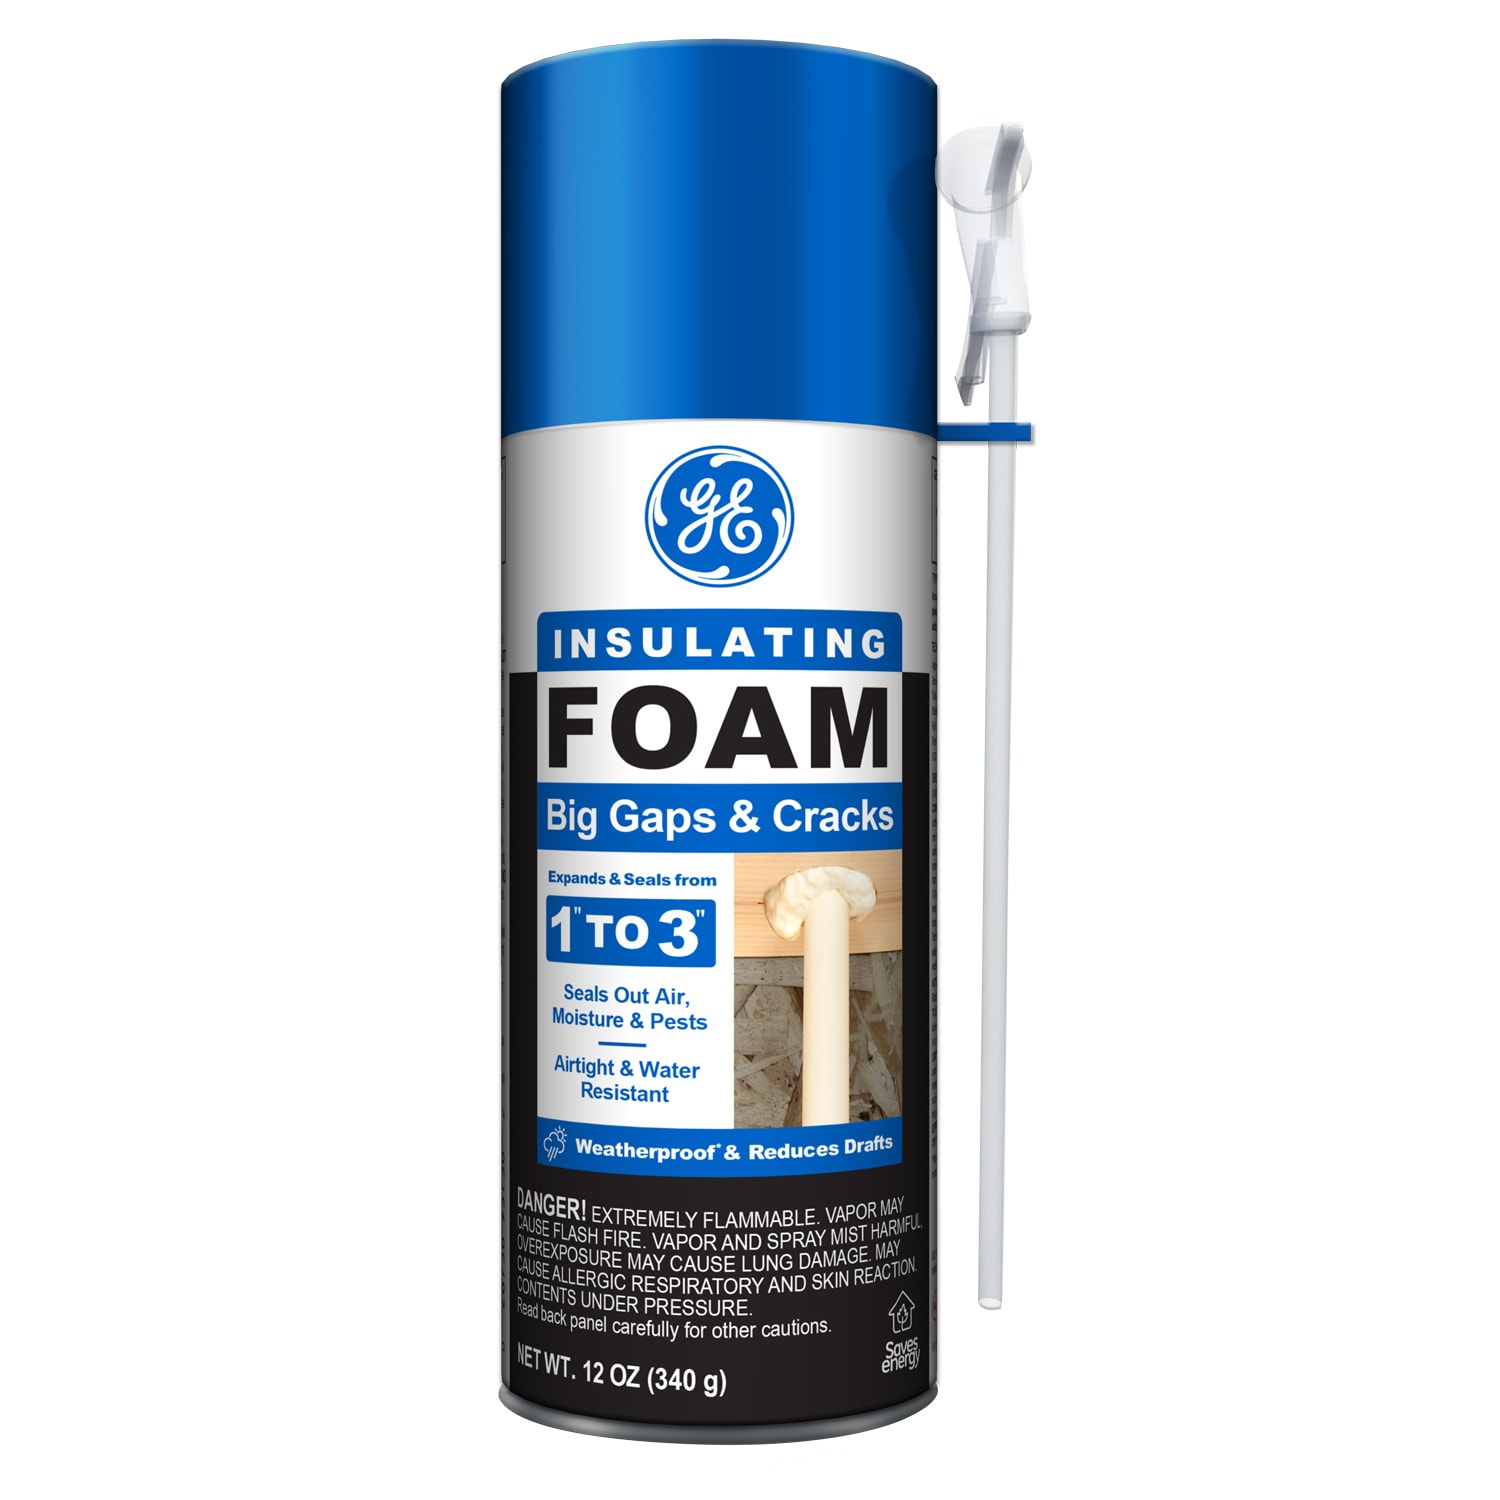 Is Spray Foam Insulation Flammable? - Spray On Foam & Coatings